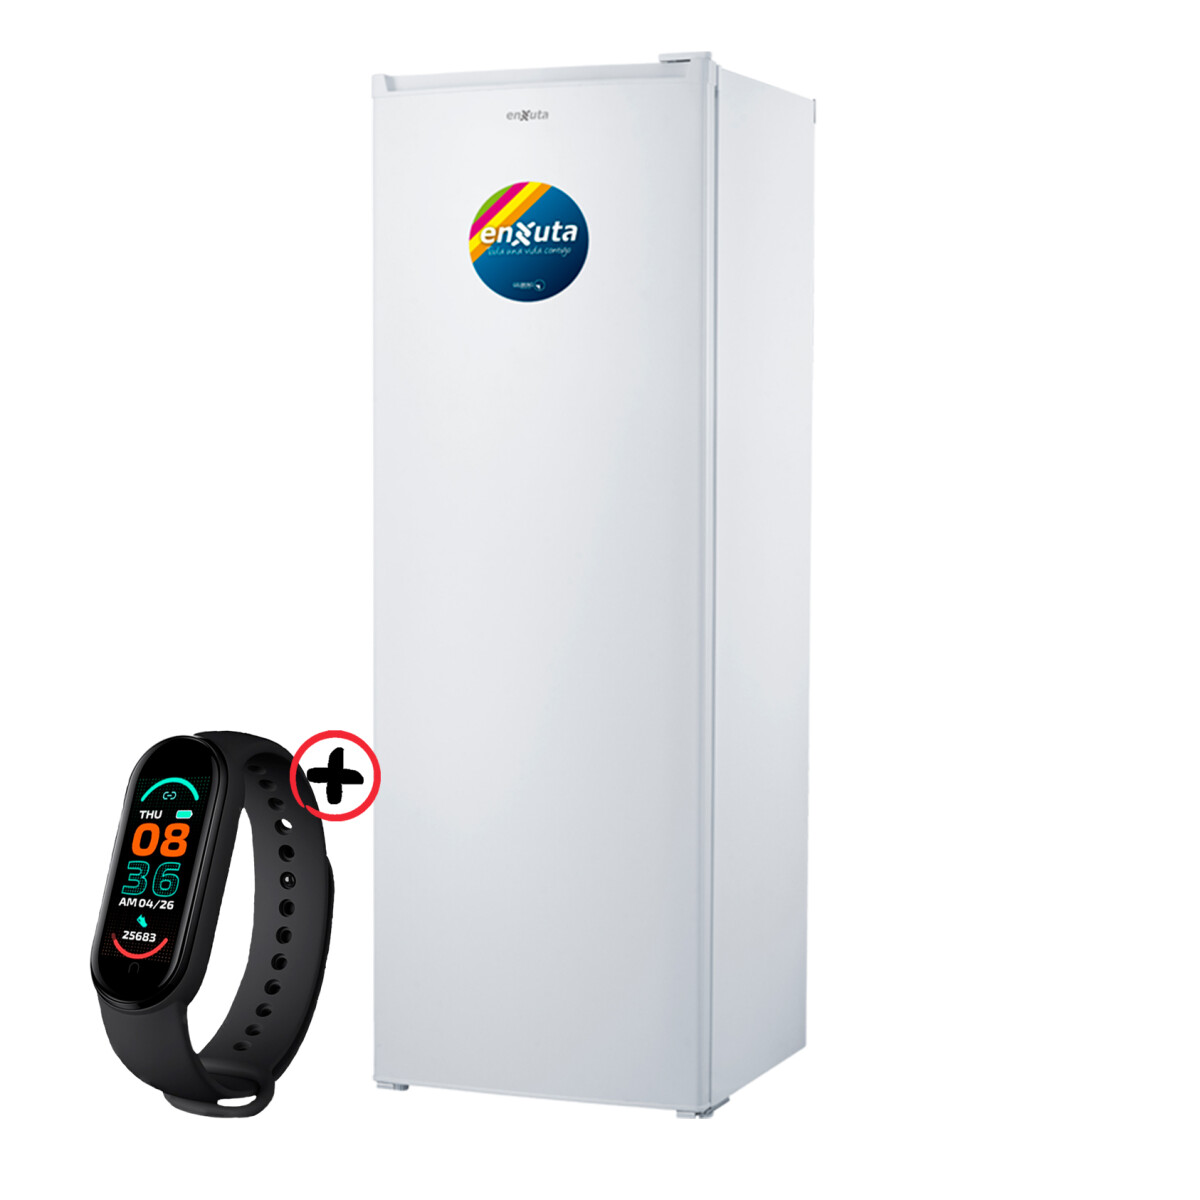 Freezer Vertical Fvenx22242 Enxuta 7 Canastos + Smartwatch 